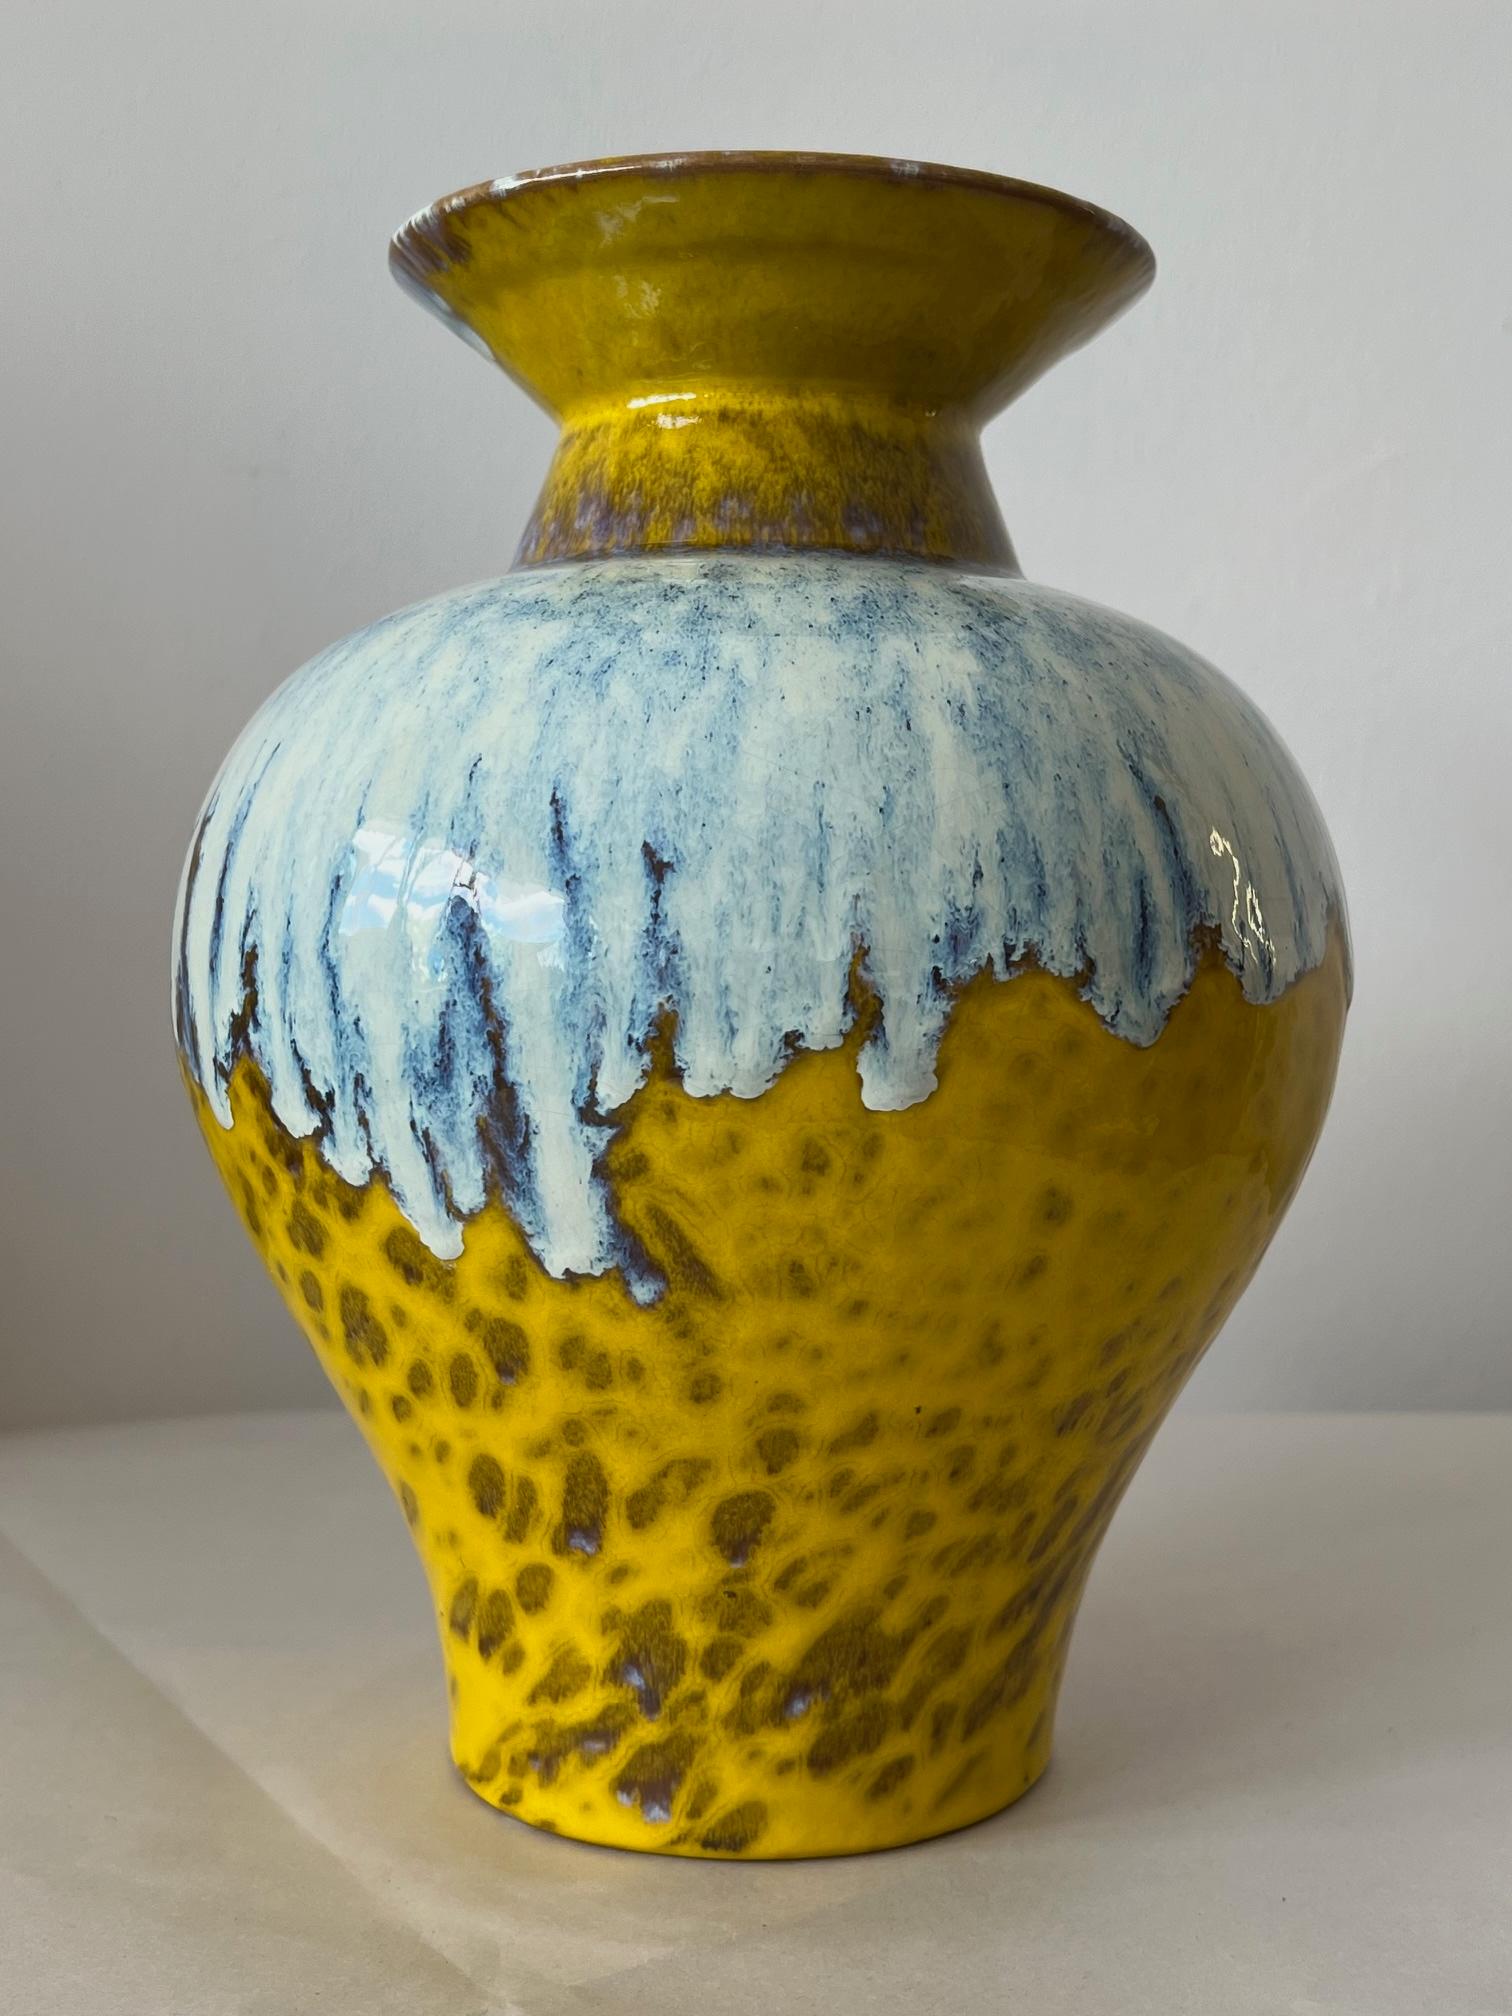 Eine schöne und gehaltvolle Vase von Raymor mit gemischten Glasuren. Kräftiges Gelb, Braun, Blau. Hergestellt in Italien in den 1970er Jahren.